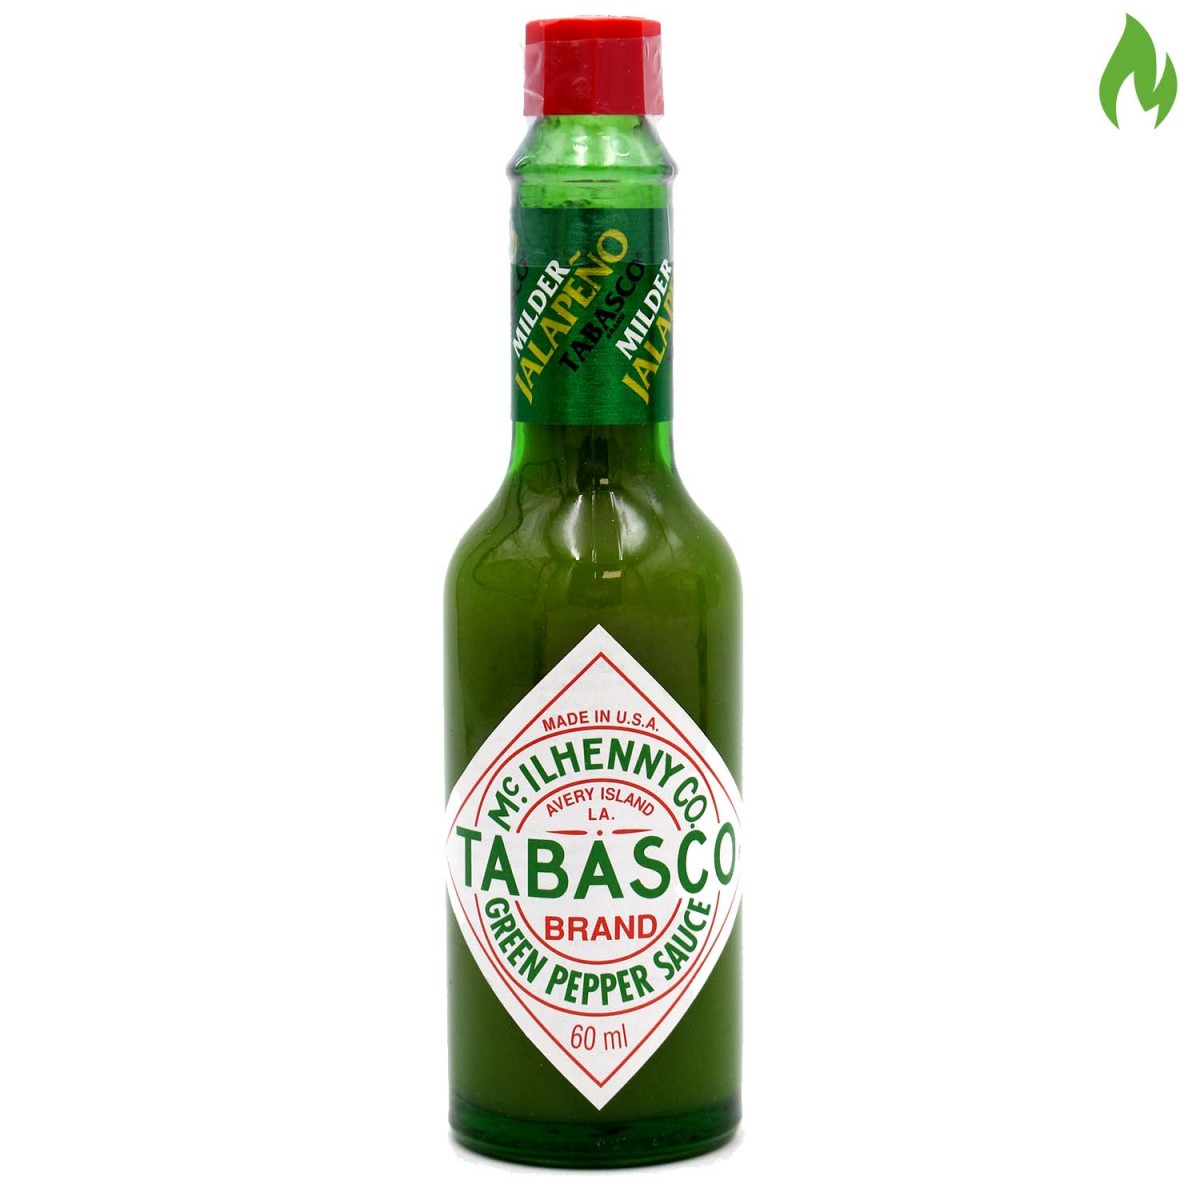 Sos Tabasco Green Pepper Sauce 60ml